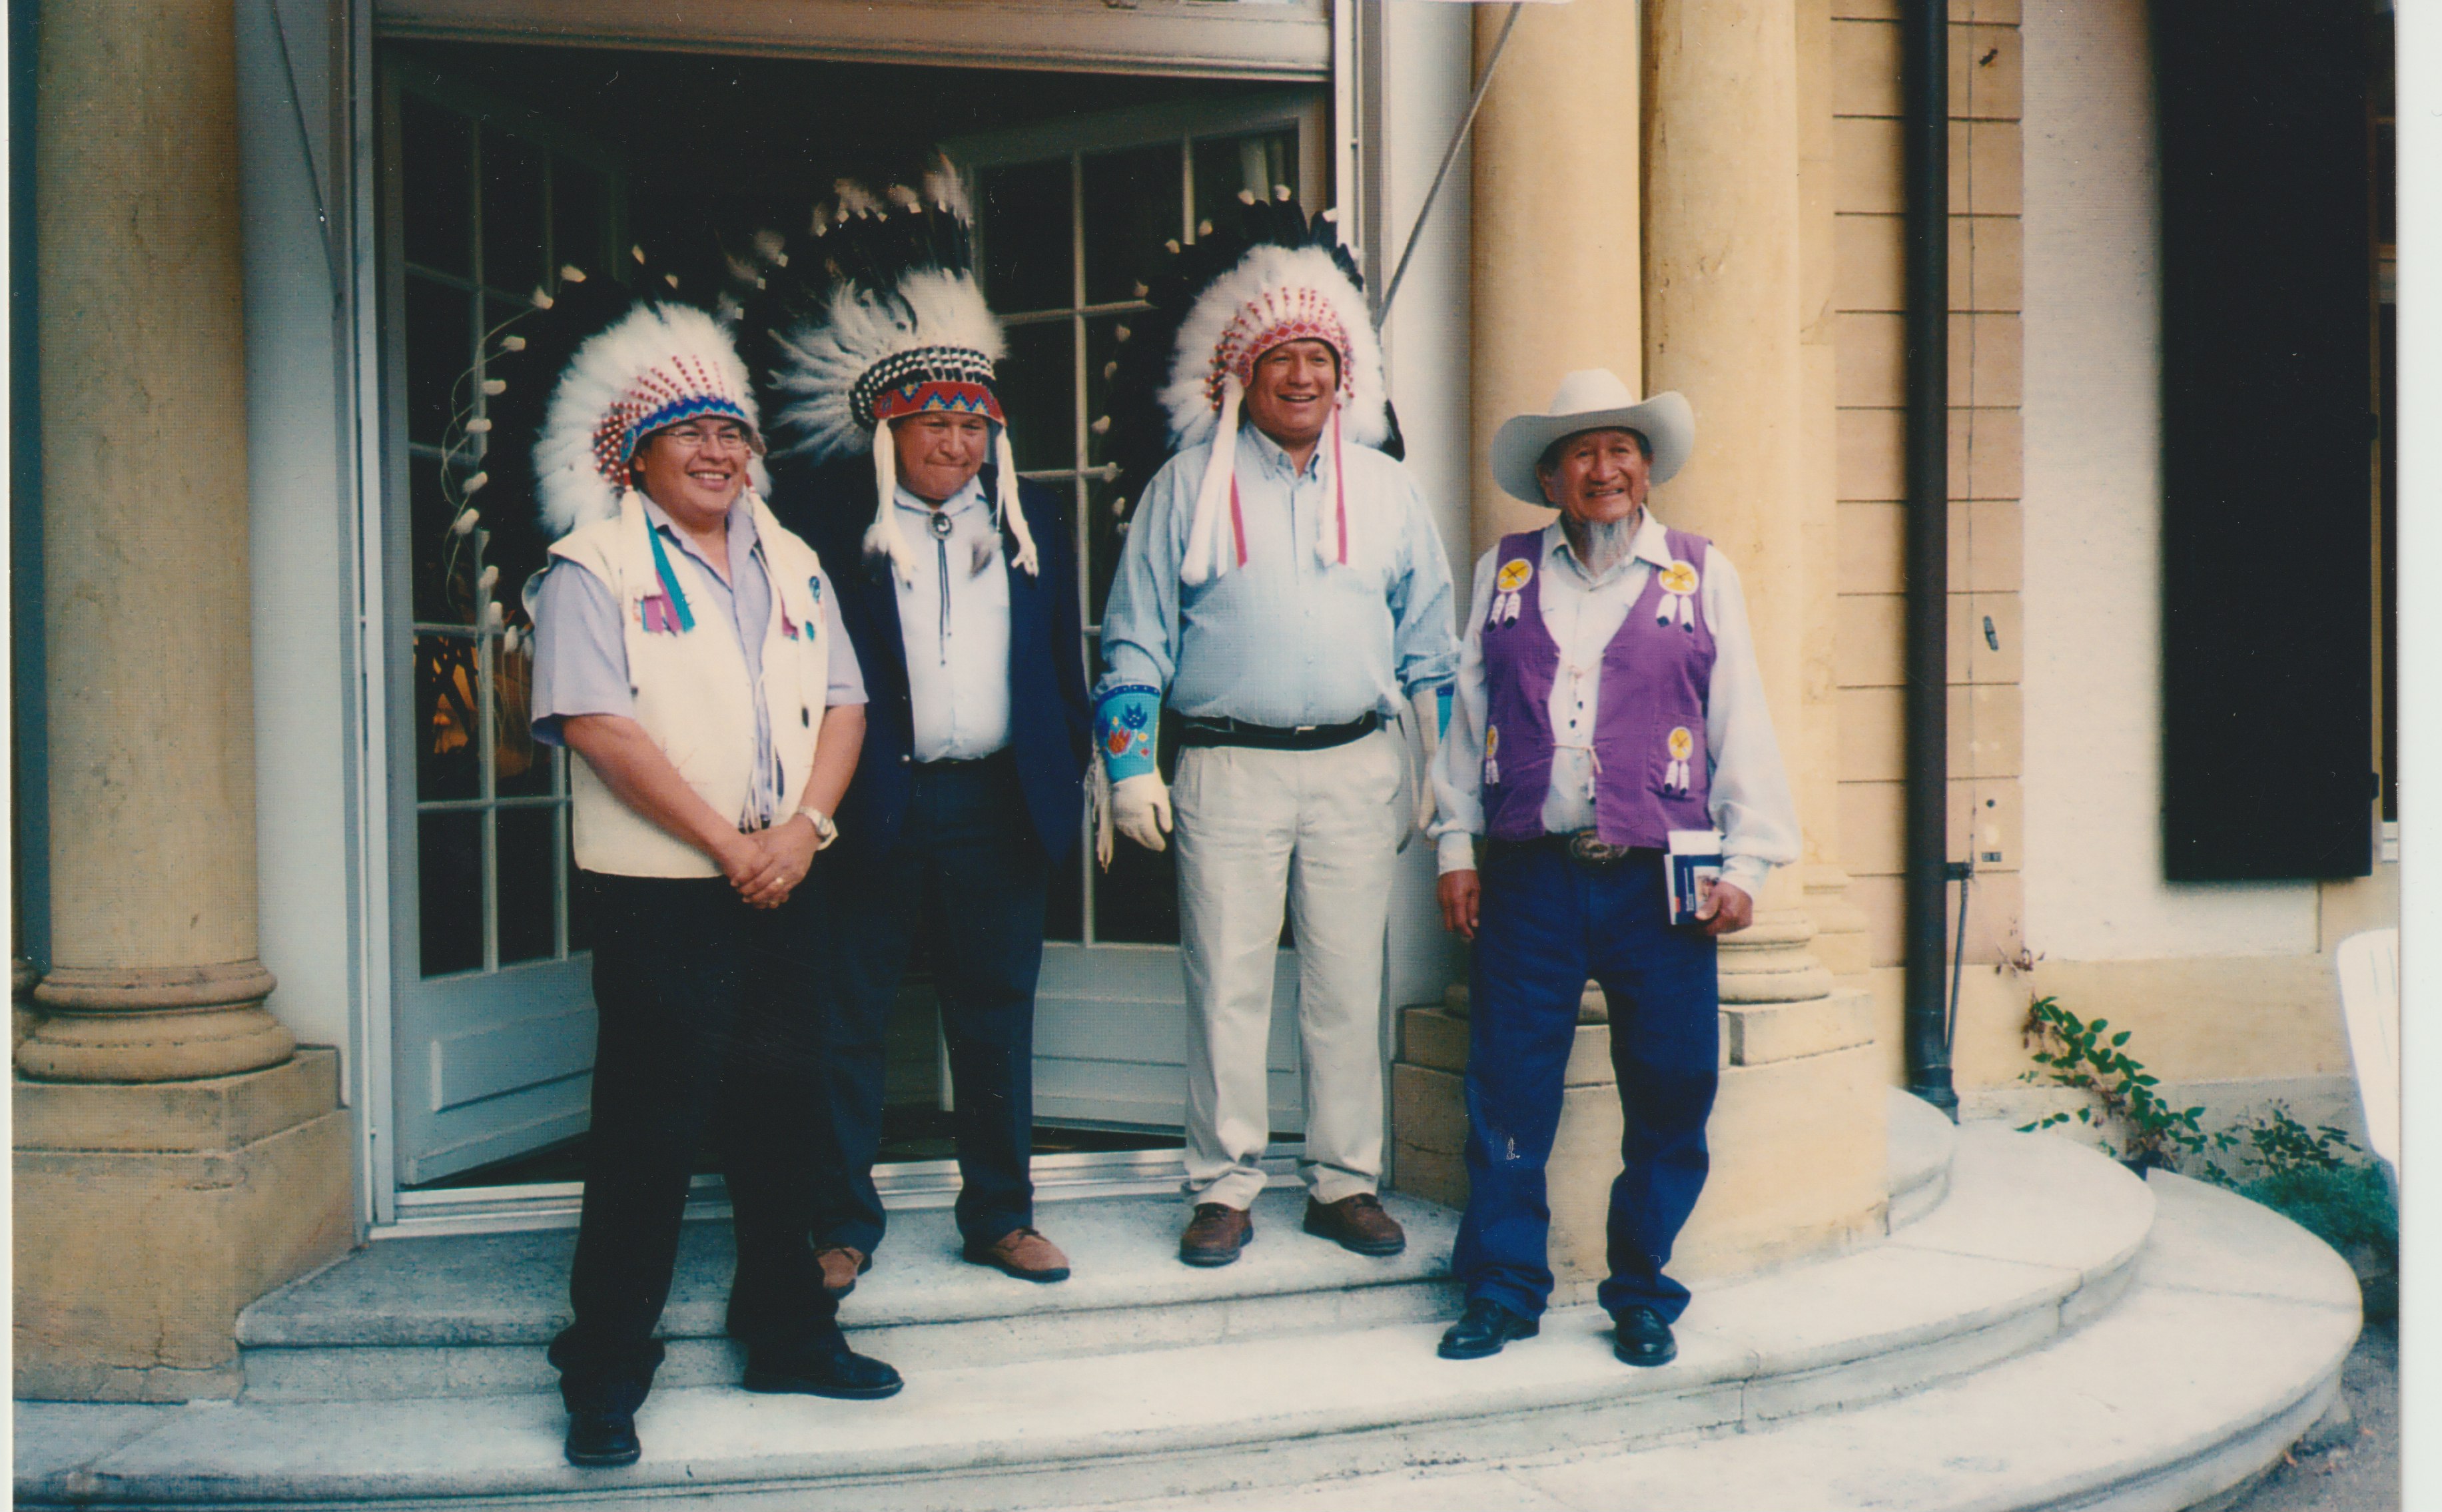 Walking Buffalo's son Bill McLean delegation in Berne 2001